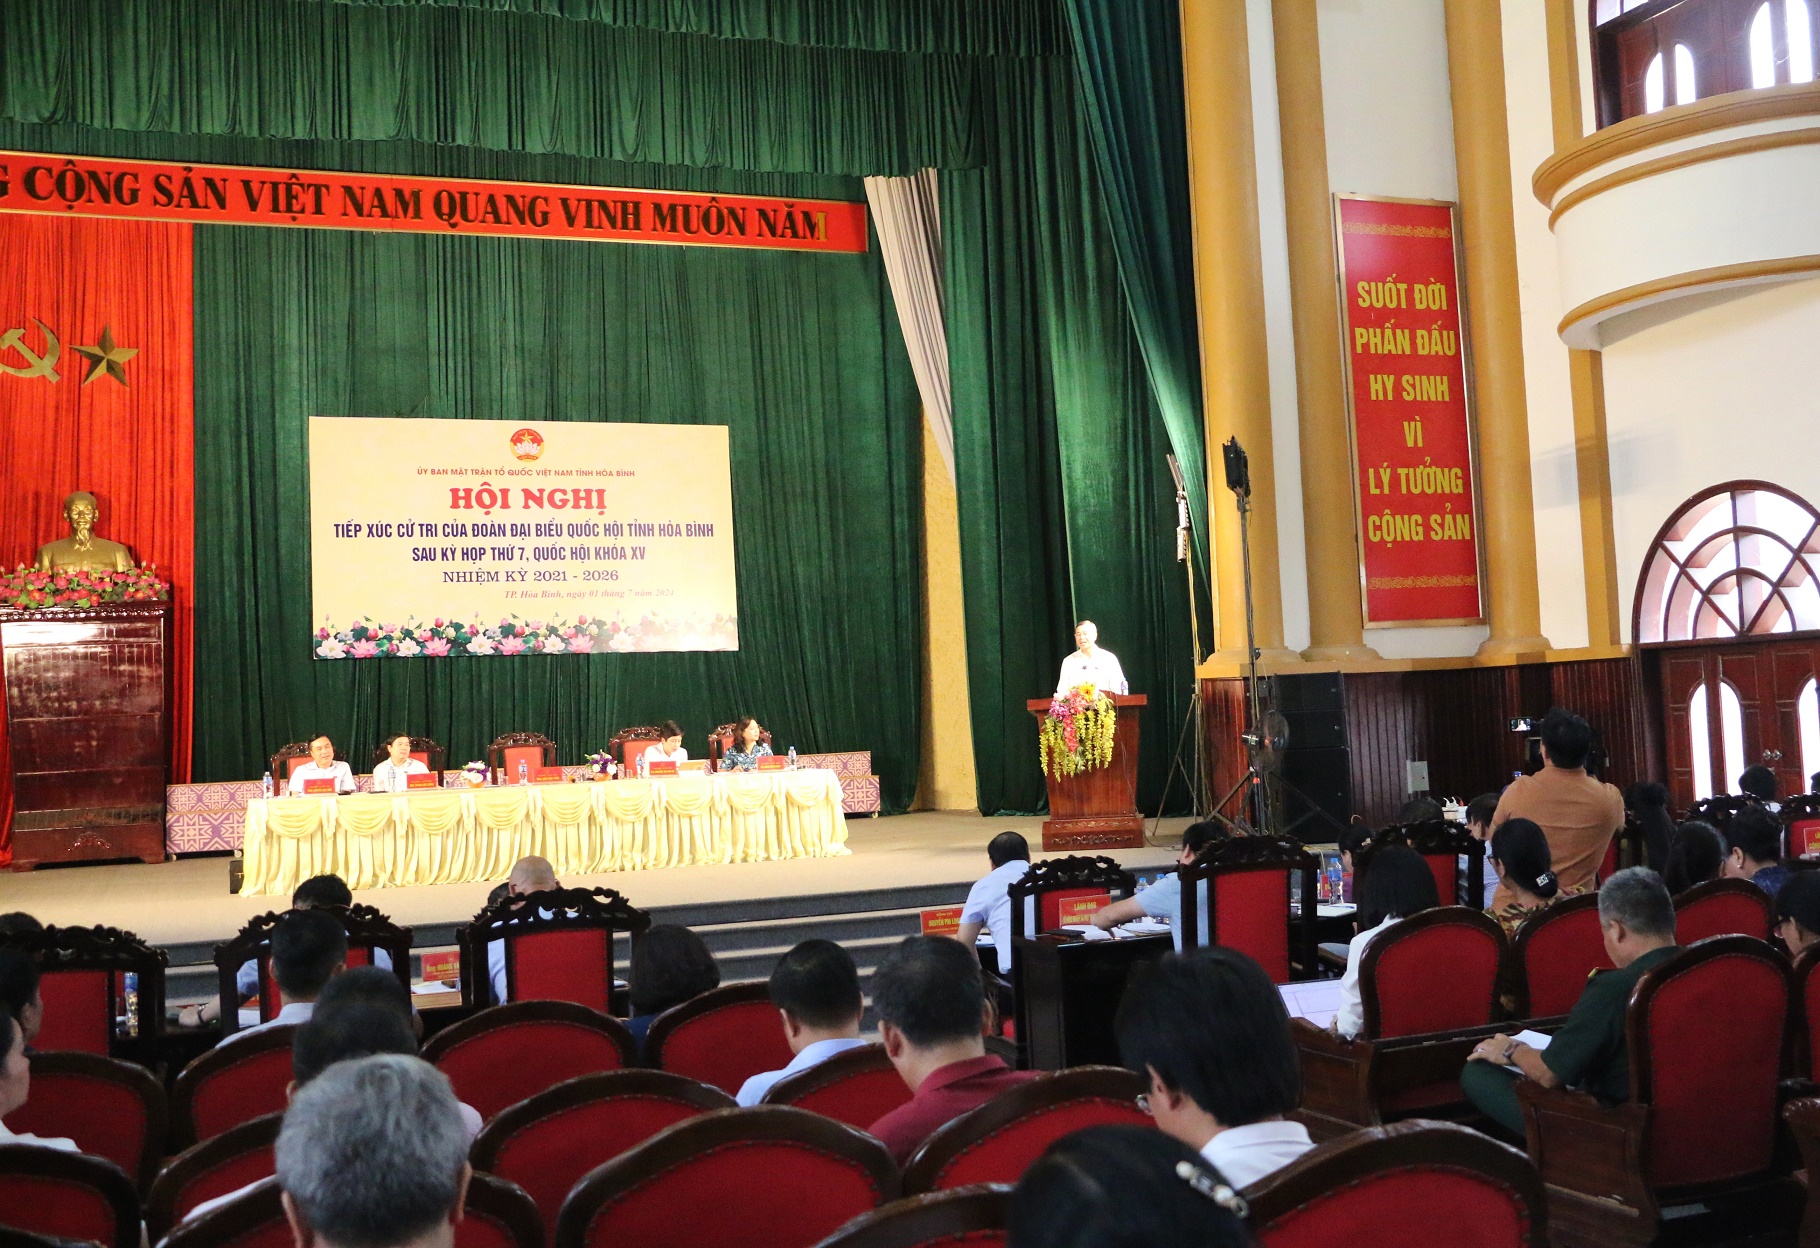 Đồng chí Ngô Văn Tuấn, Ủy viên BCH T.Ư Đảng, Tổng Kiểm toán Nhà nước phát biểu kết luận hội nghị